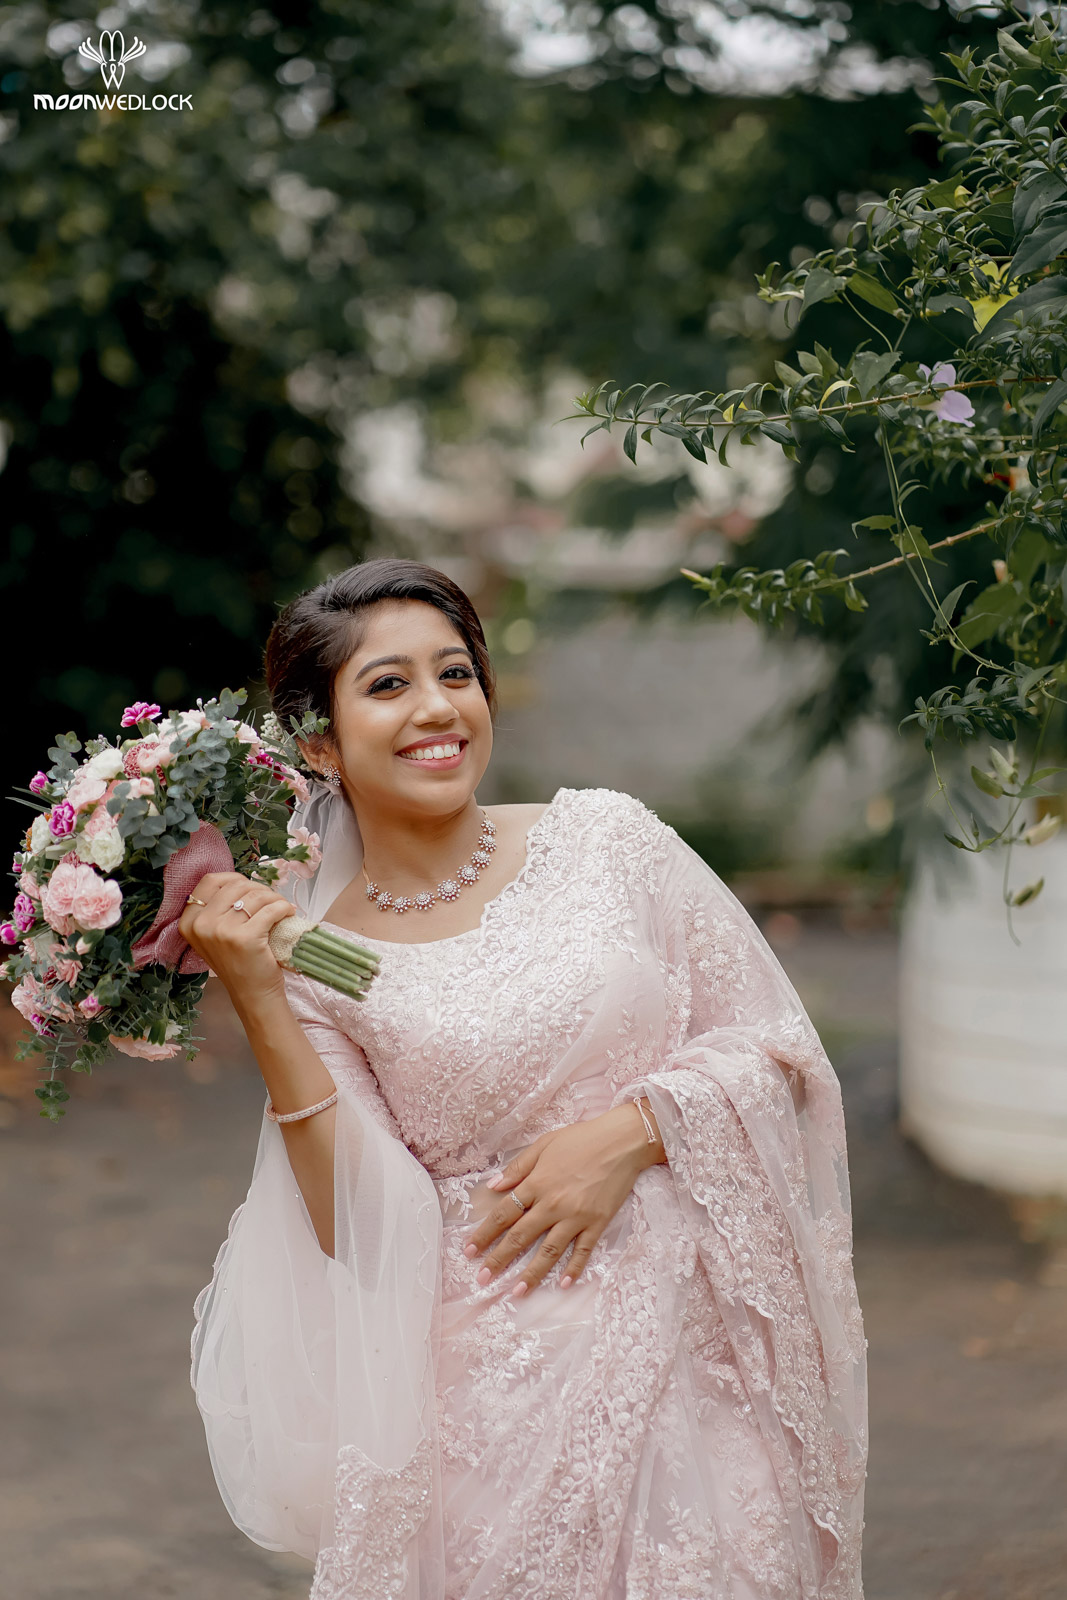 bangalore-christian-wedding-photography-moonwedlock (4)